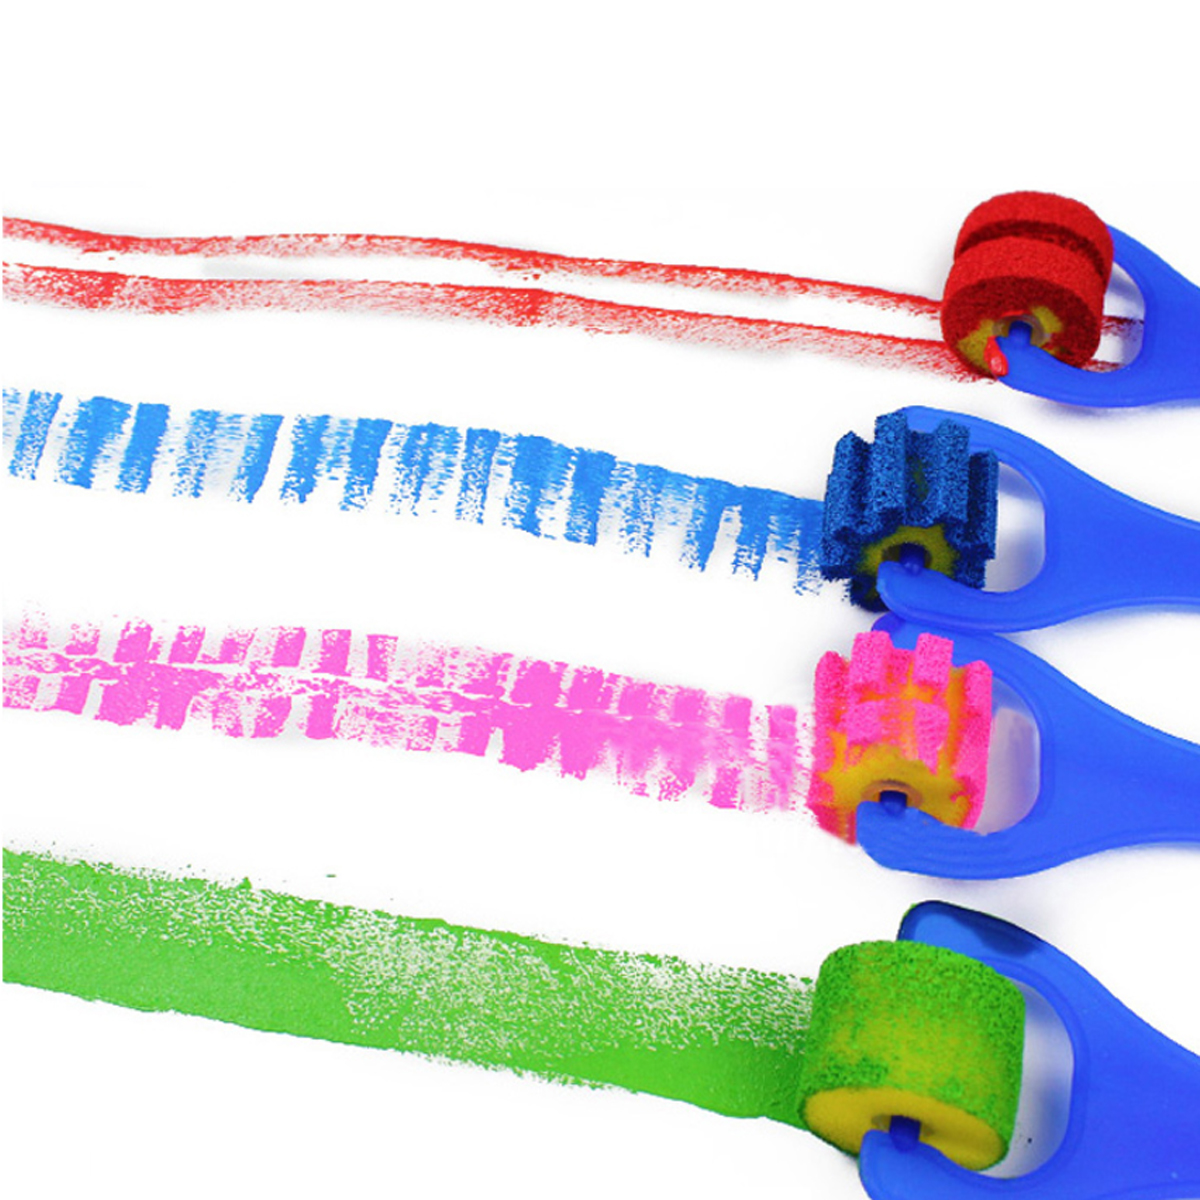 30pcs-Child-Paint-Roller-DIY-Painting-Toys-Sponge-Brush-Kit-Set-Graffiti-Drawing-Tools-for-Kids-Earl-1836475-6